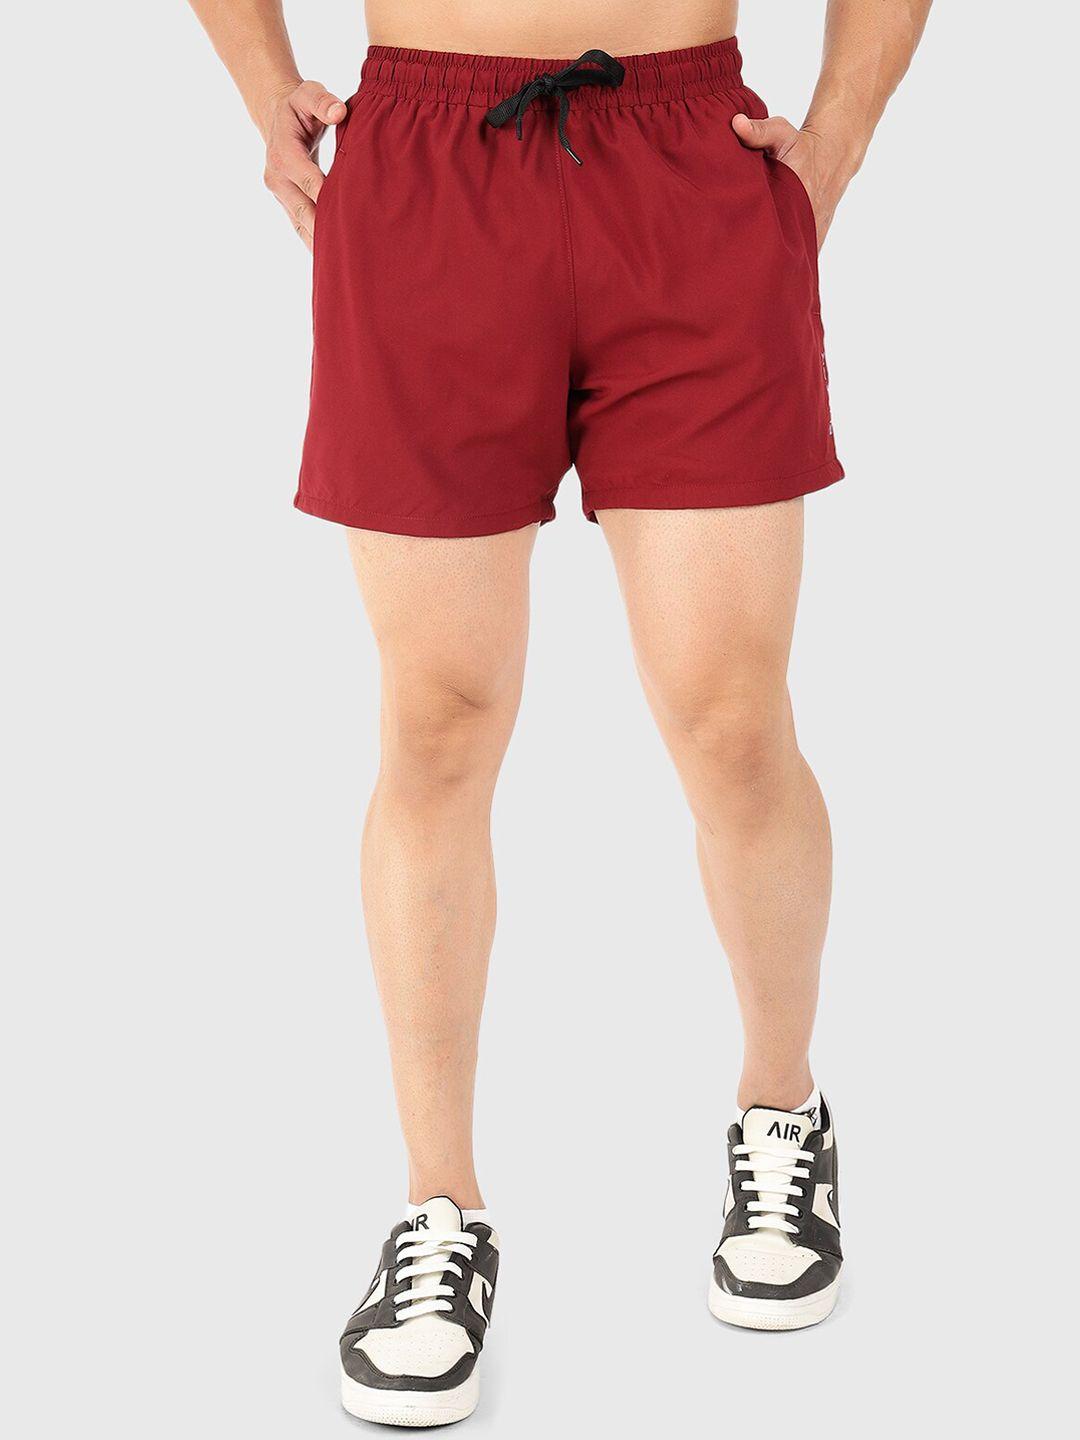 fuaark-men-mid-rise-dri-fit-sports-shorts